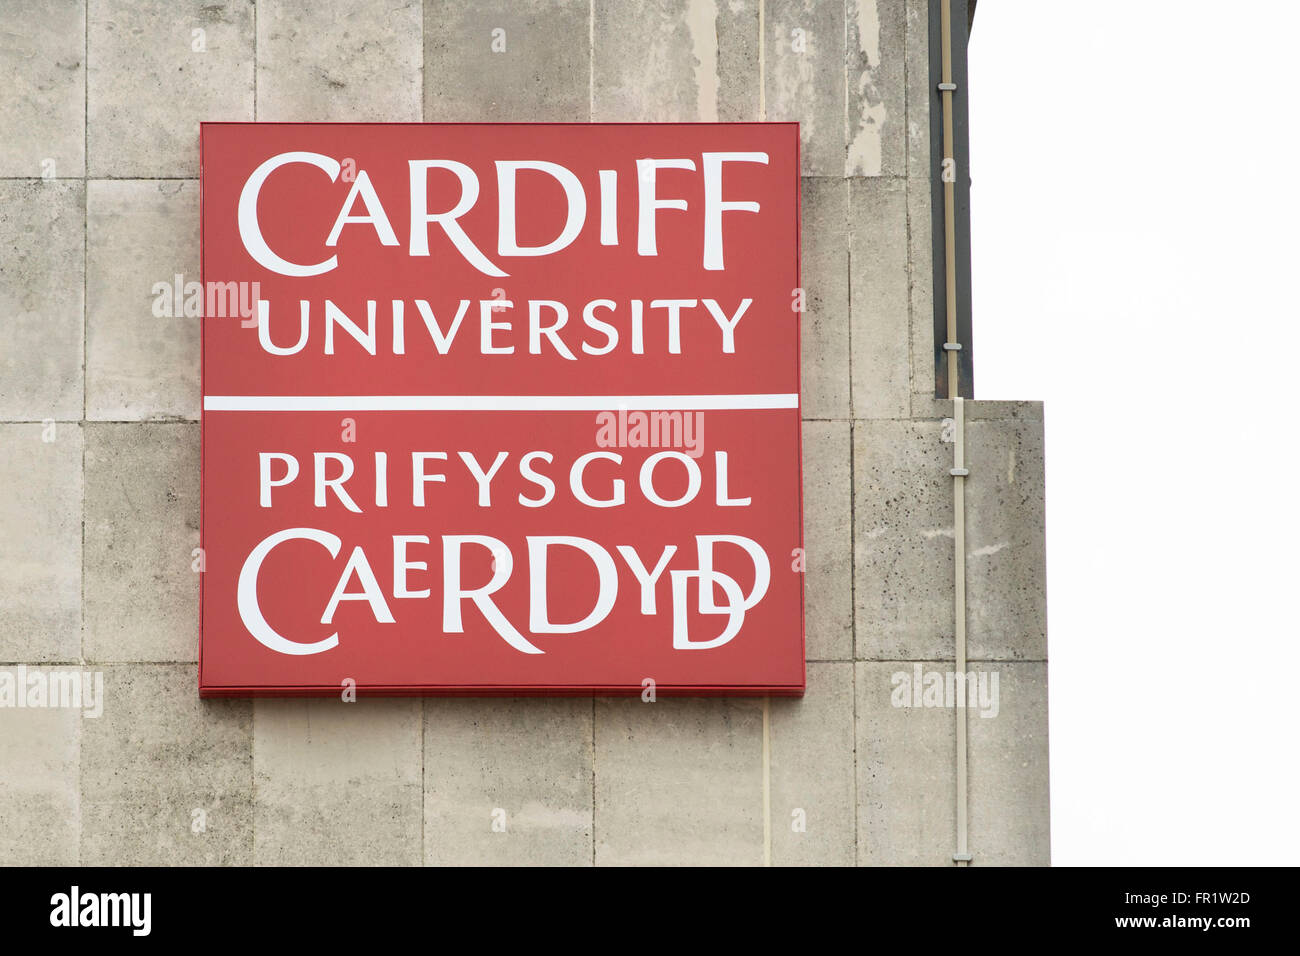 Cardiff University sign logo. Stock Photo